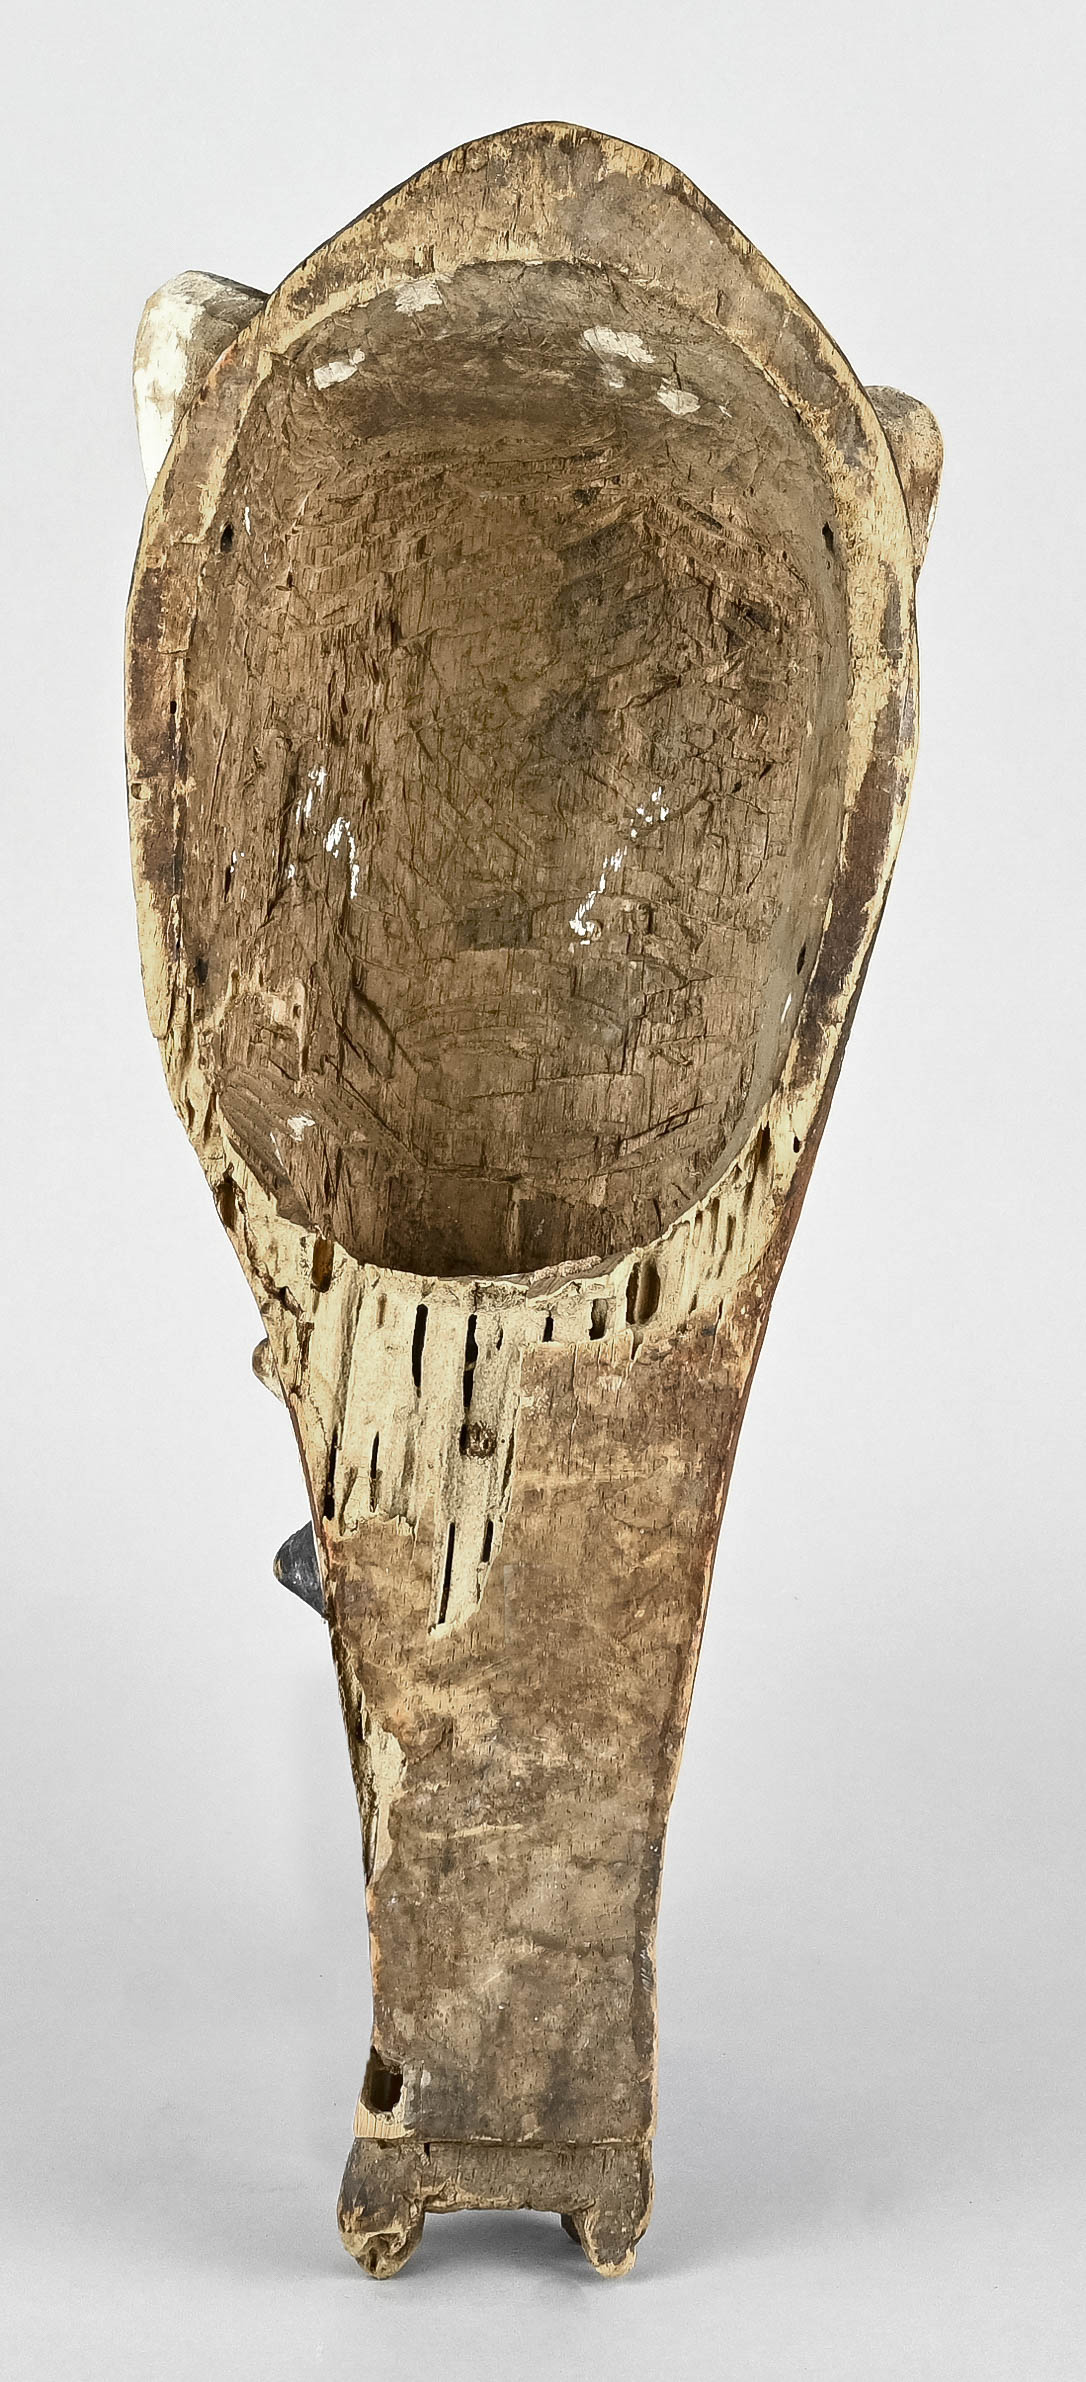 Maske, Afrika, Tiermaske mit langer Schnauze, und seitlich je drei spitzen Höckern. Holz polychrom  - Bild 3 aus 4